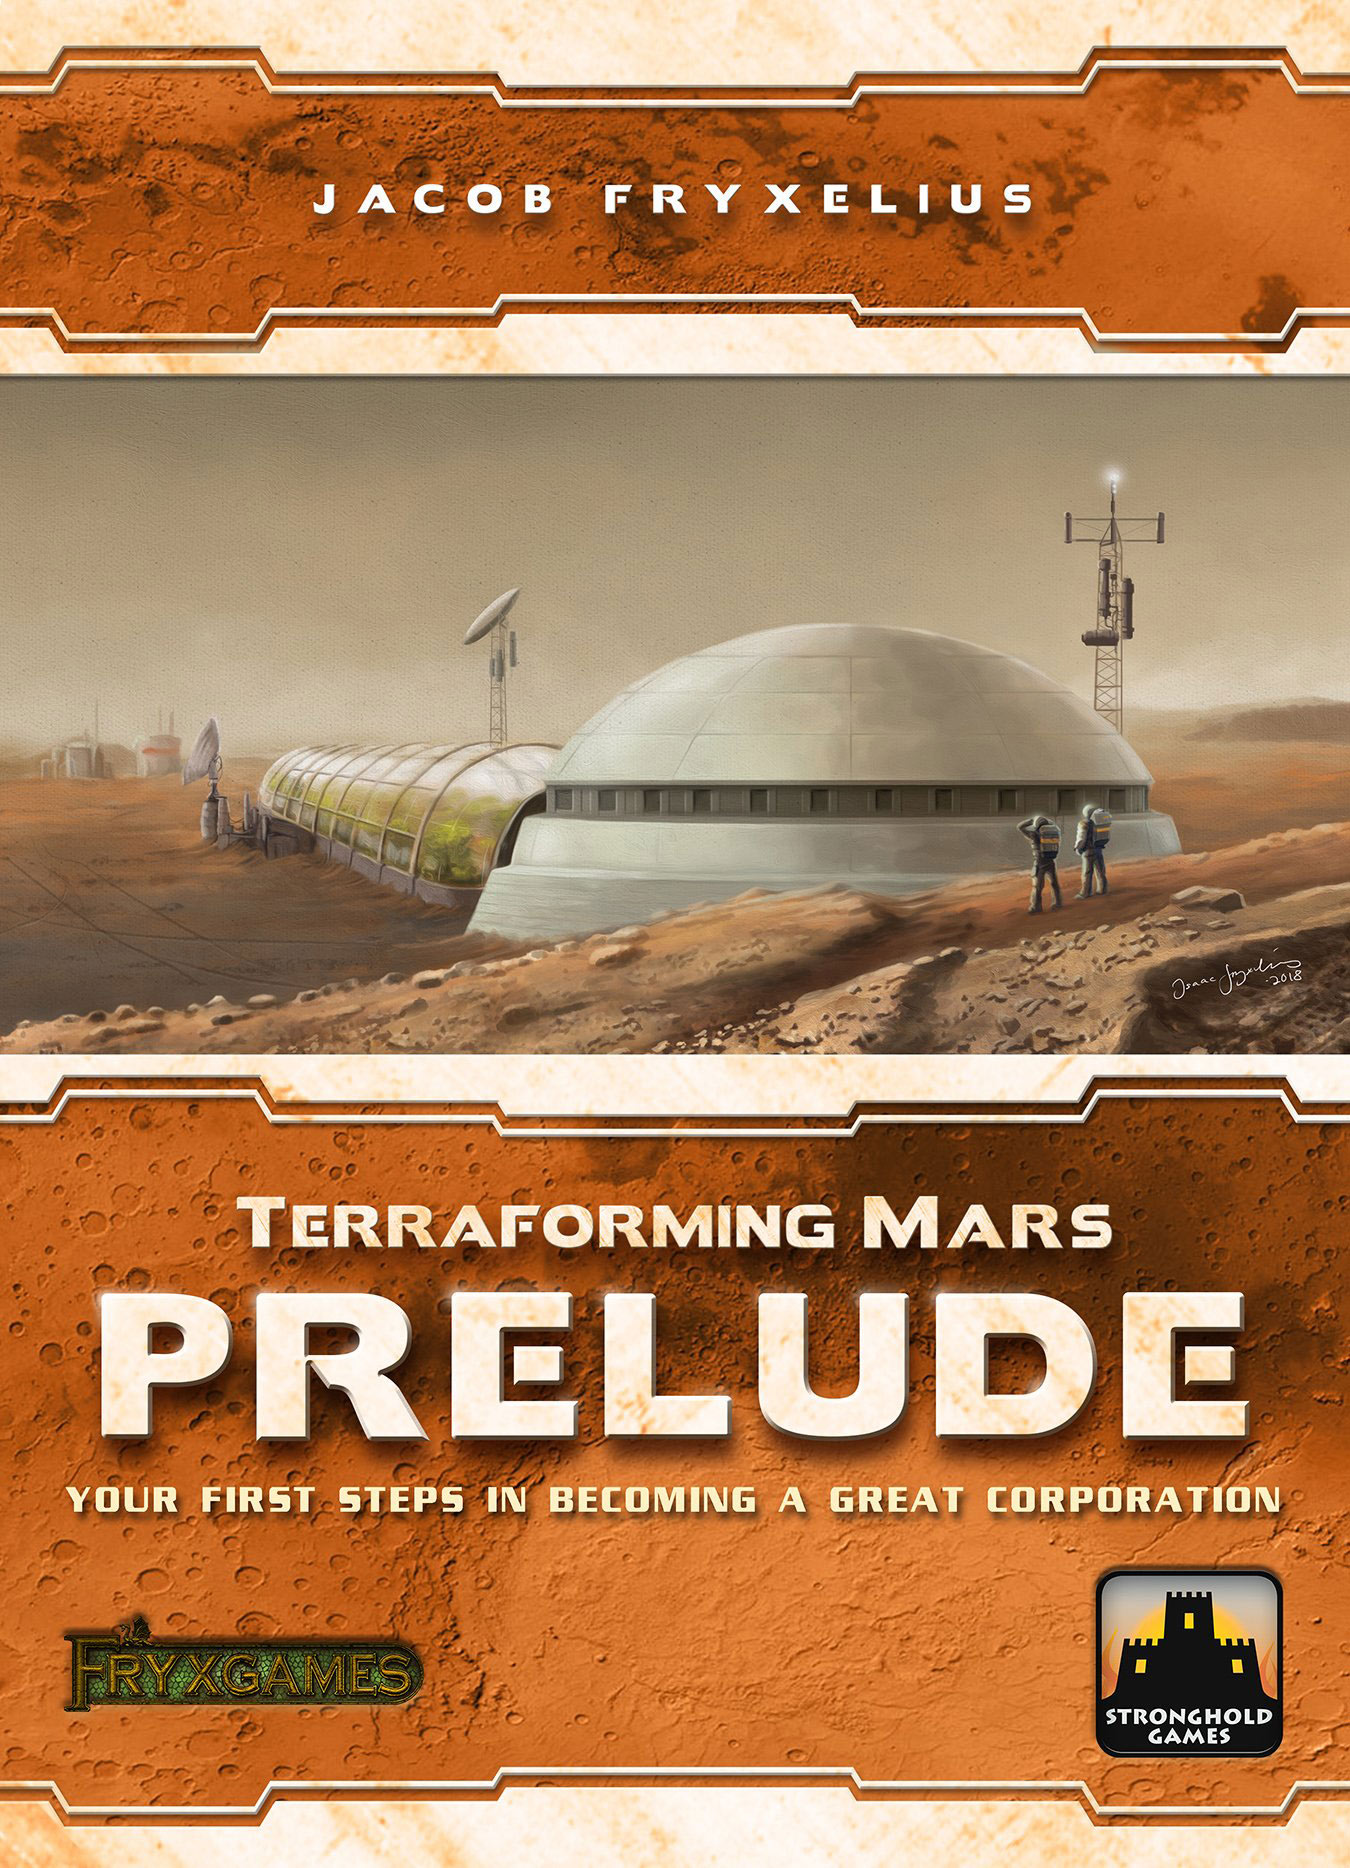 Terraforming Mars: Dritte Erweiterung Prelude angekündigt